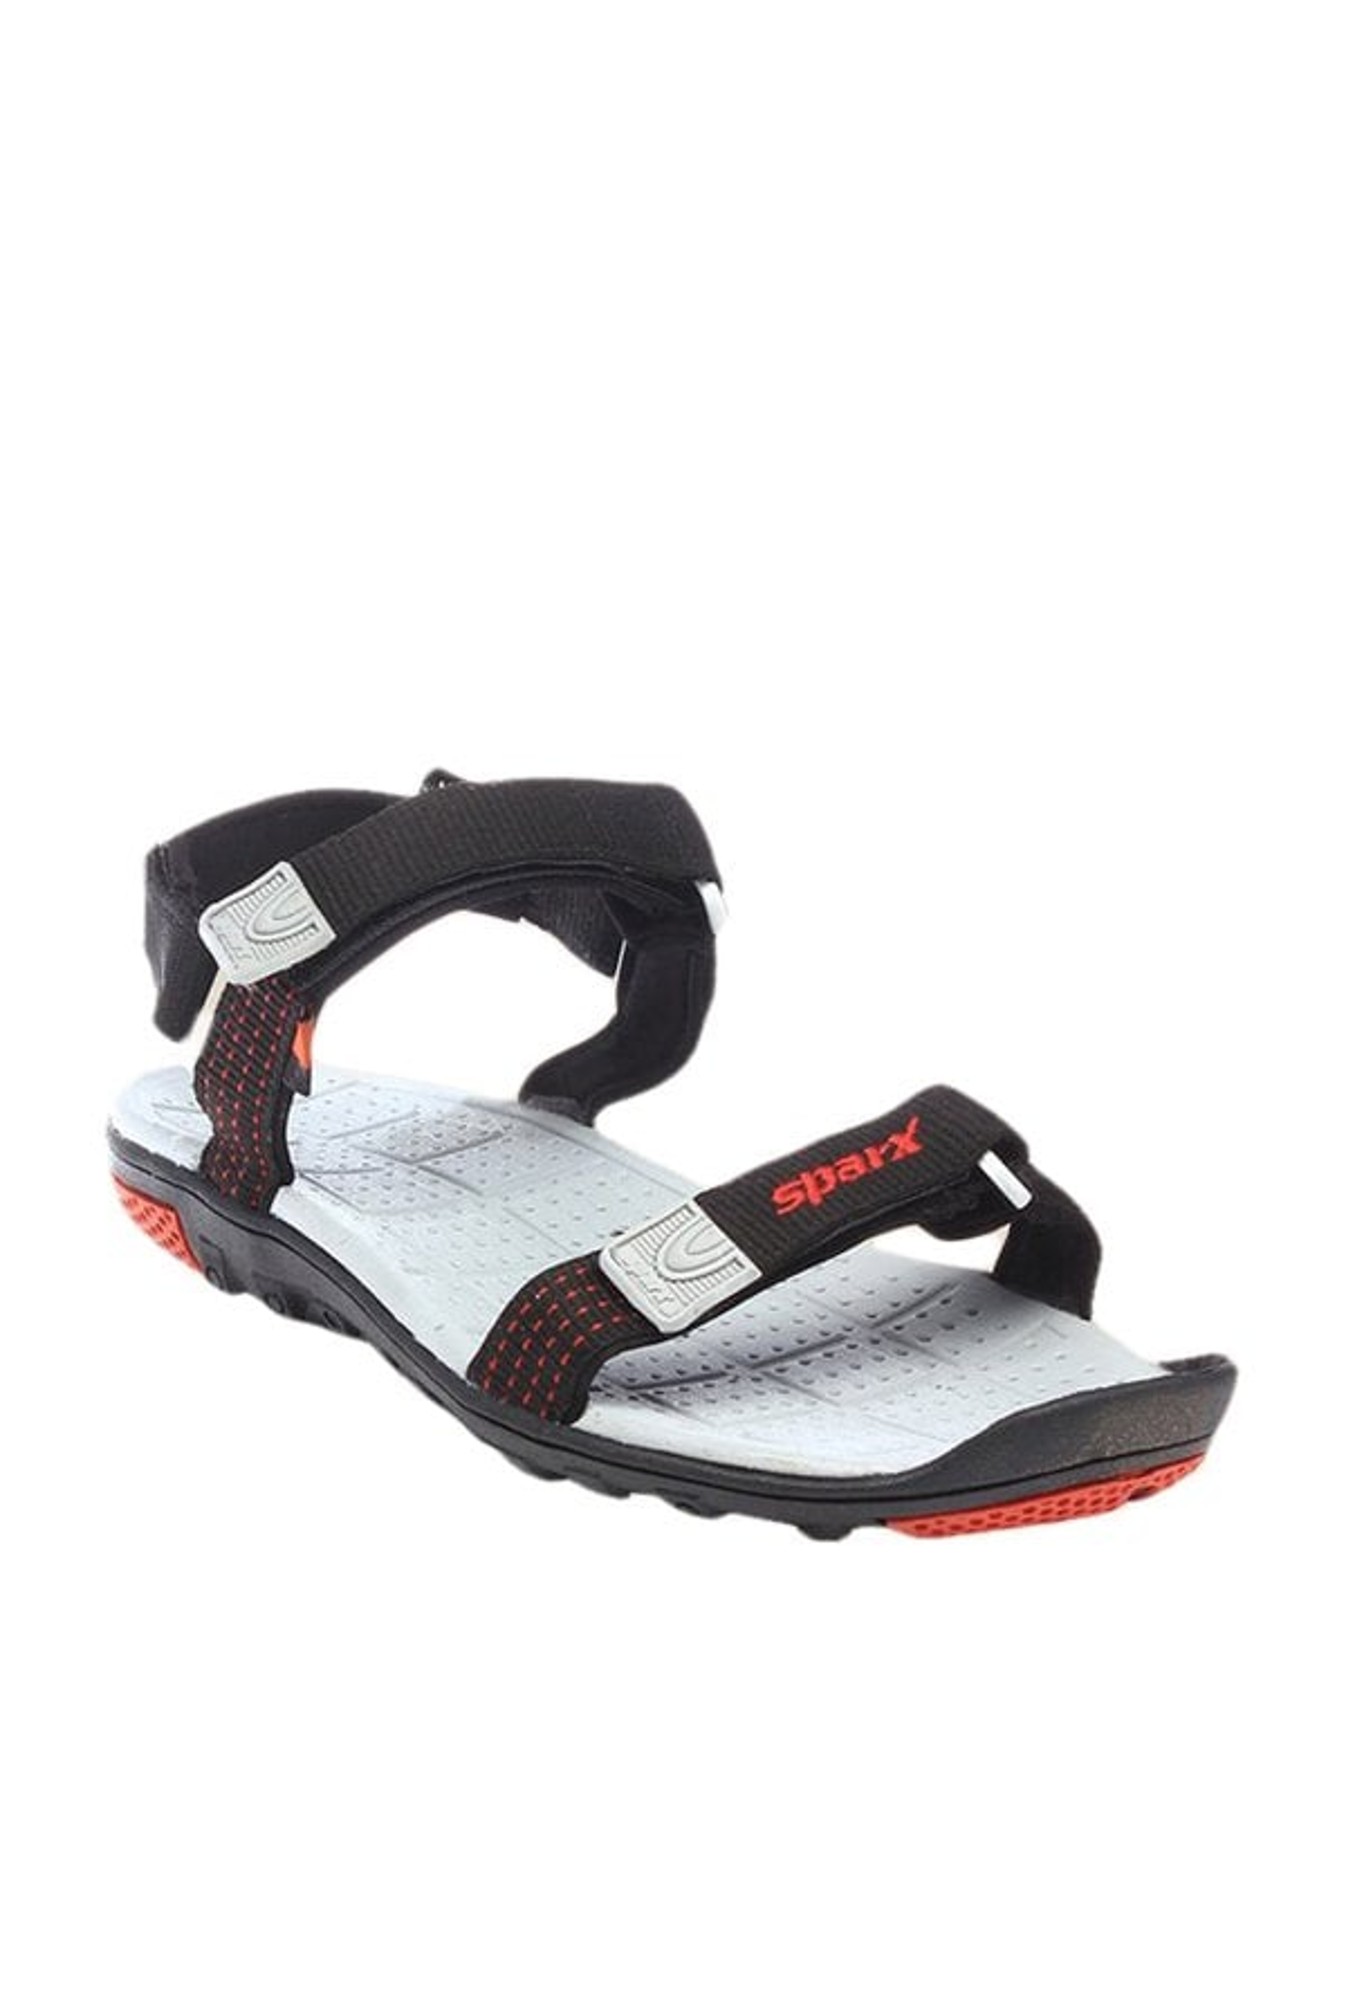 15% OFF on SPARX Sparx Men SS-464 Black Red Floater Sandals Men Black, Red  Sports Sandals on Flipkart | PaisaWapas.com